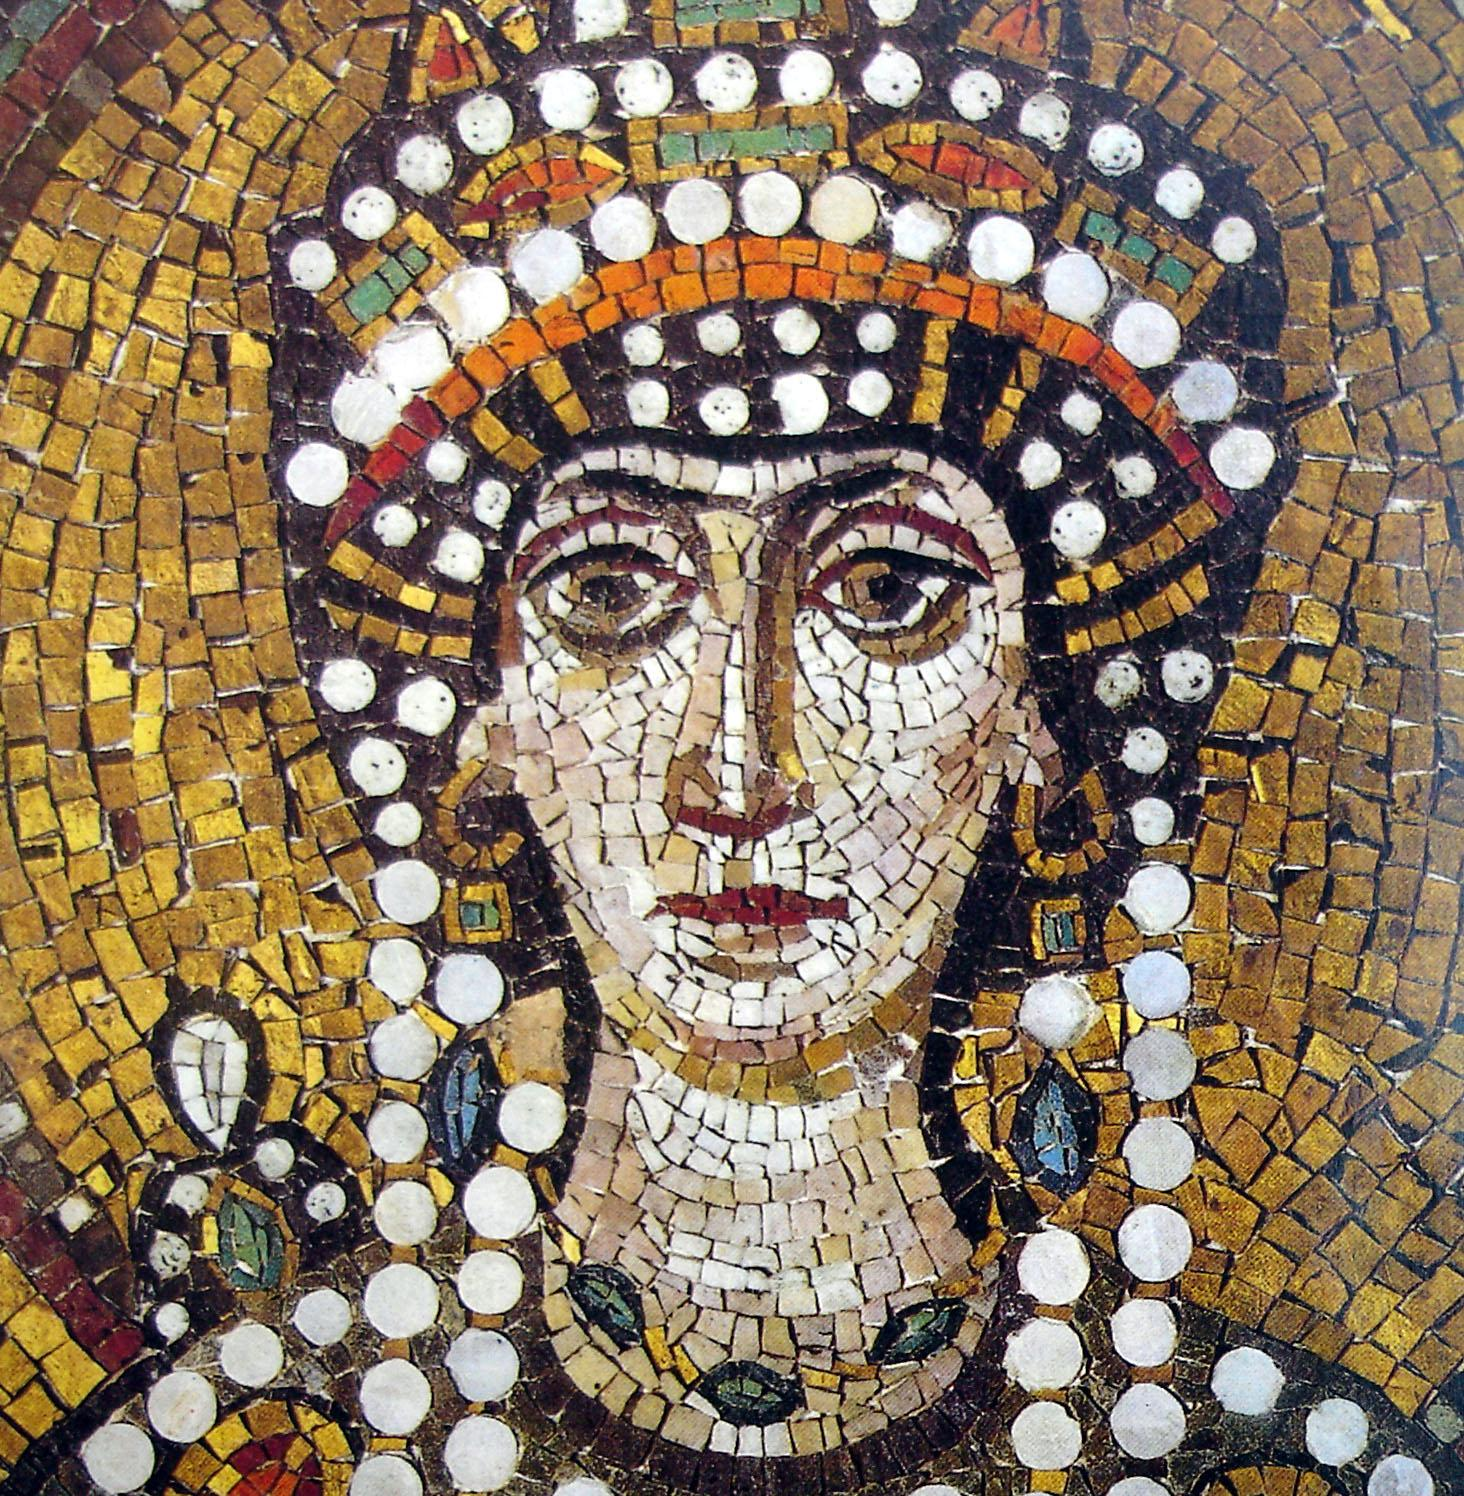 Le immagini sono Rappresentate attraverso La tecnica del Mosaico I mosaici sono formati da tessere